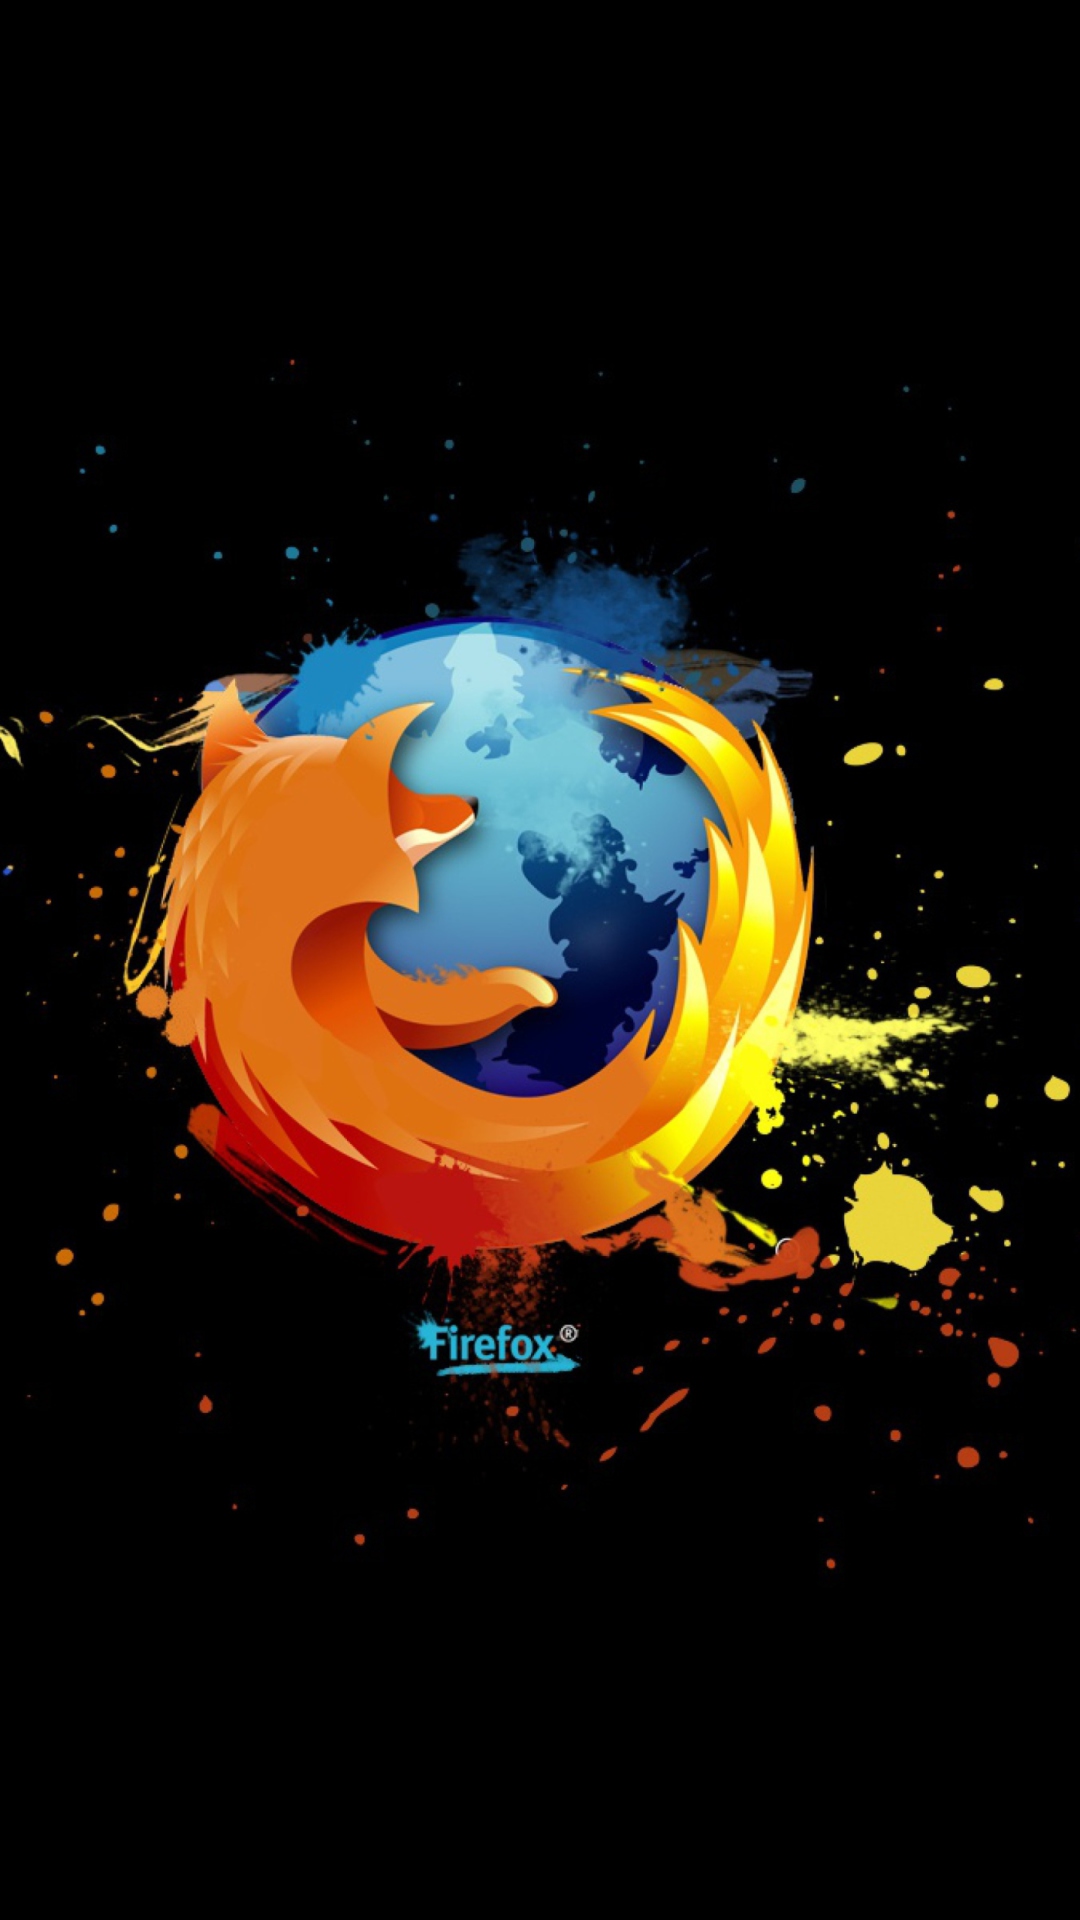 Firefox Logo wallpaper 1080x1920